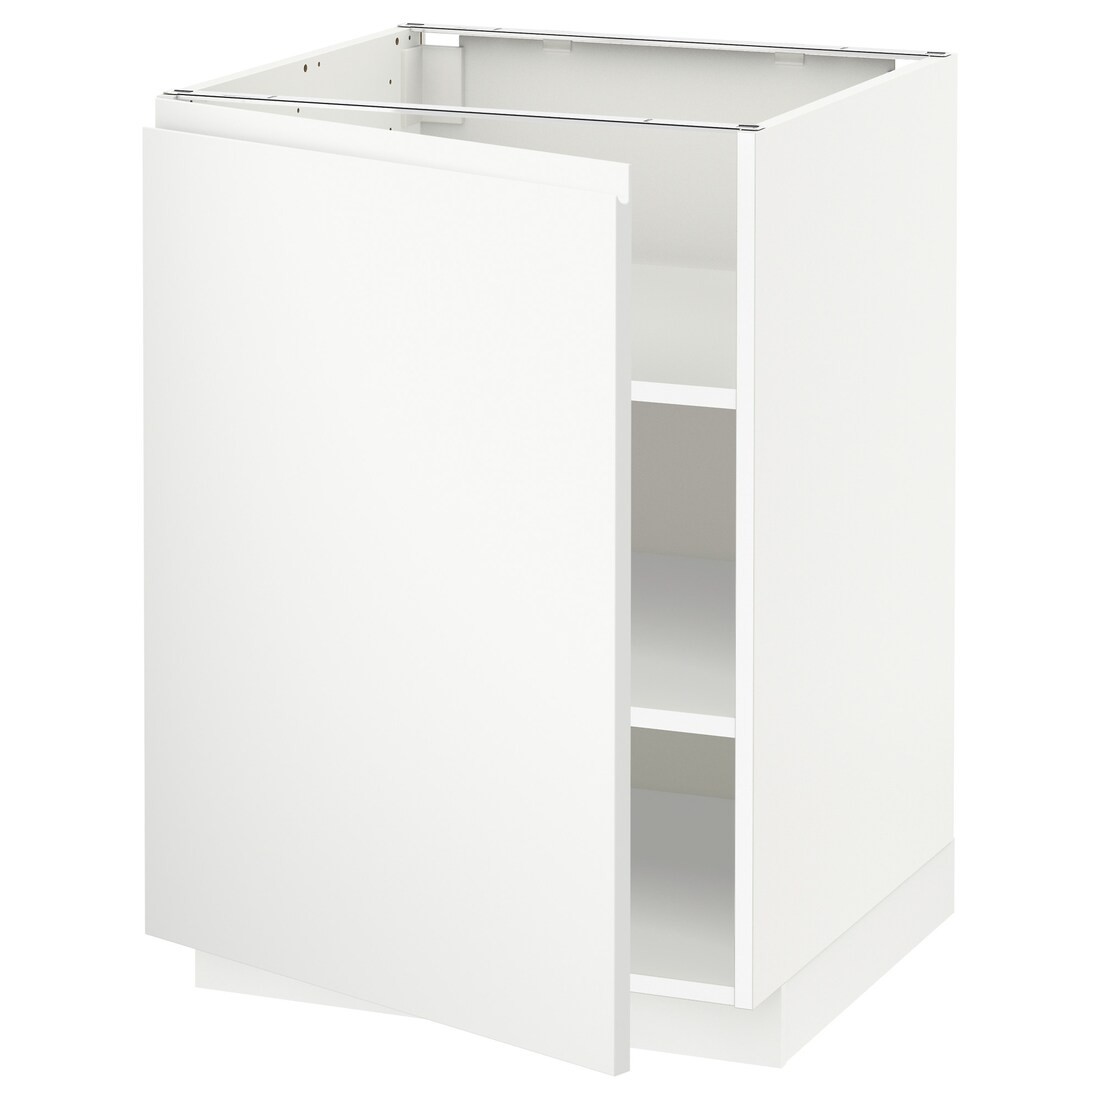 IKEA METOD МЕТОД Напольный шкаф с полками, белый / Voxtorp матовый белый, 60x60 см 09469446 094.694.46